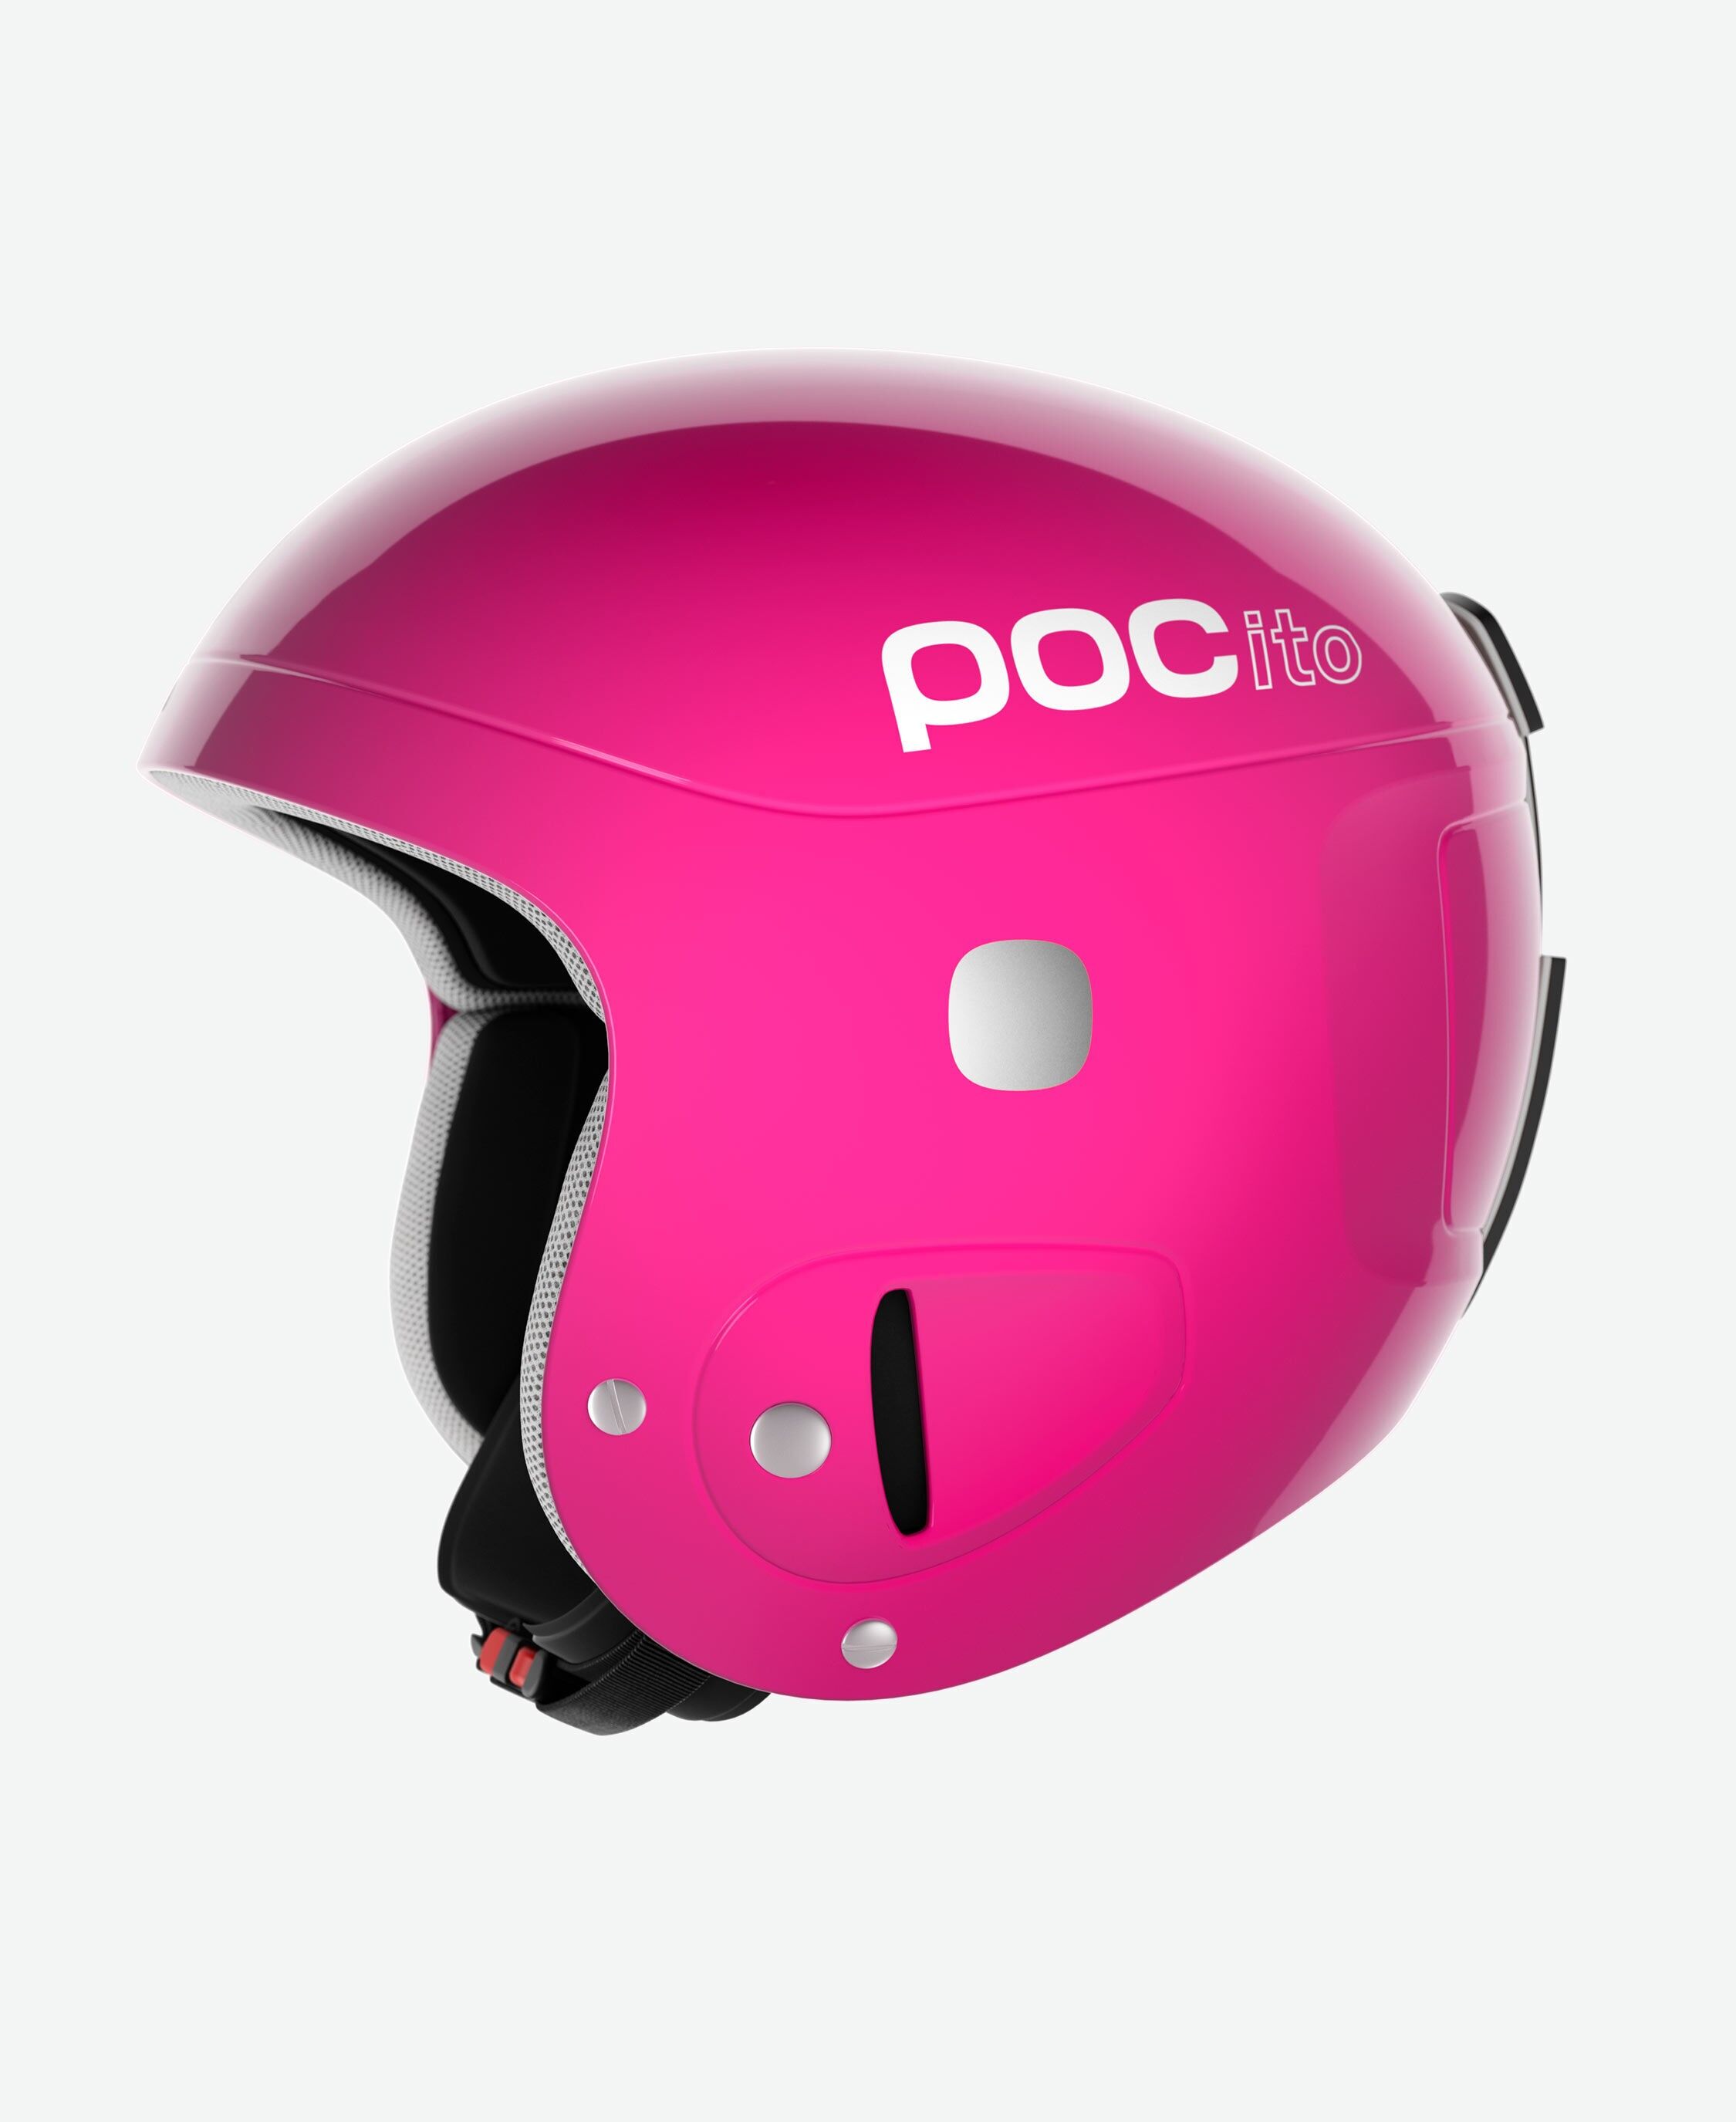 Poc Pocito Skull - Ski helmet - Kids